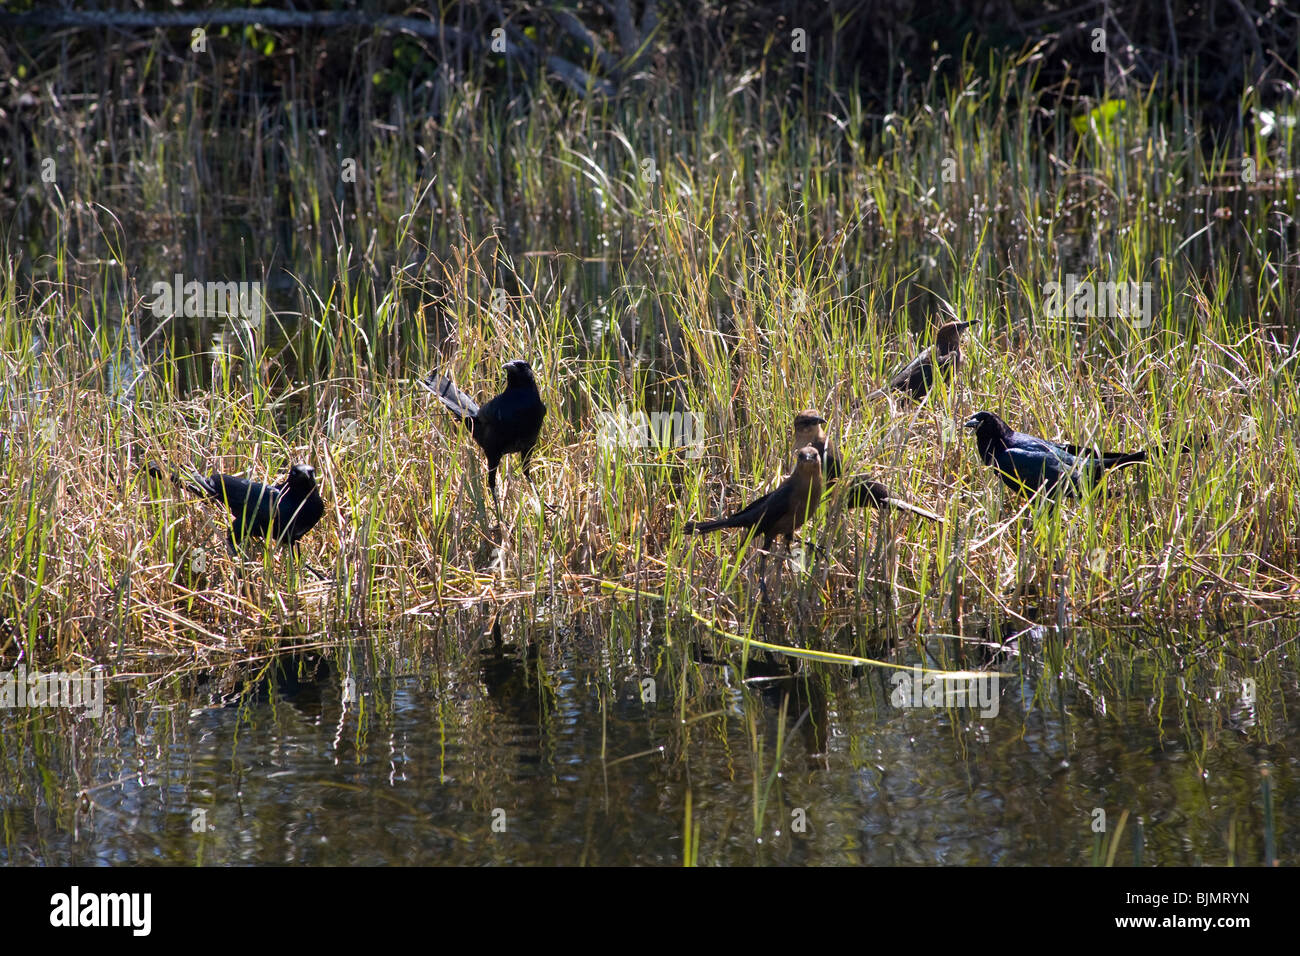 American Crows o Corvus brachyrhynchos nel fiume di erba, Sawgrass, nel Parco nazionale delle Everglades, Miami Florida USA Foto Stock